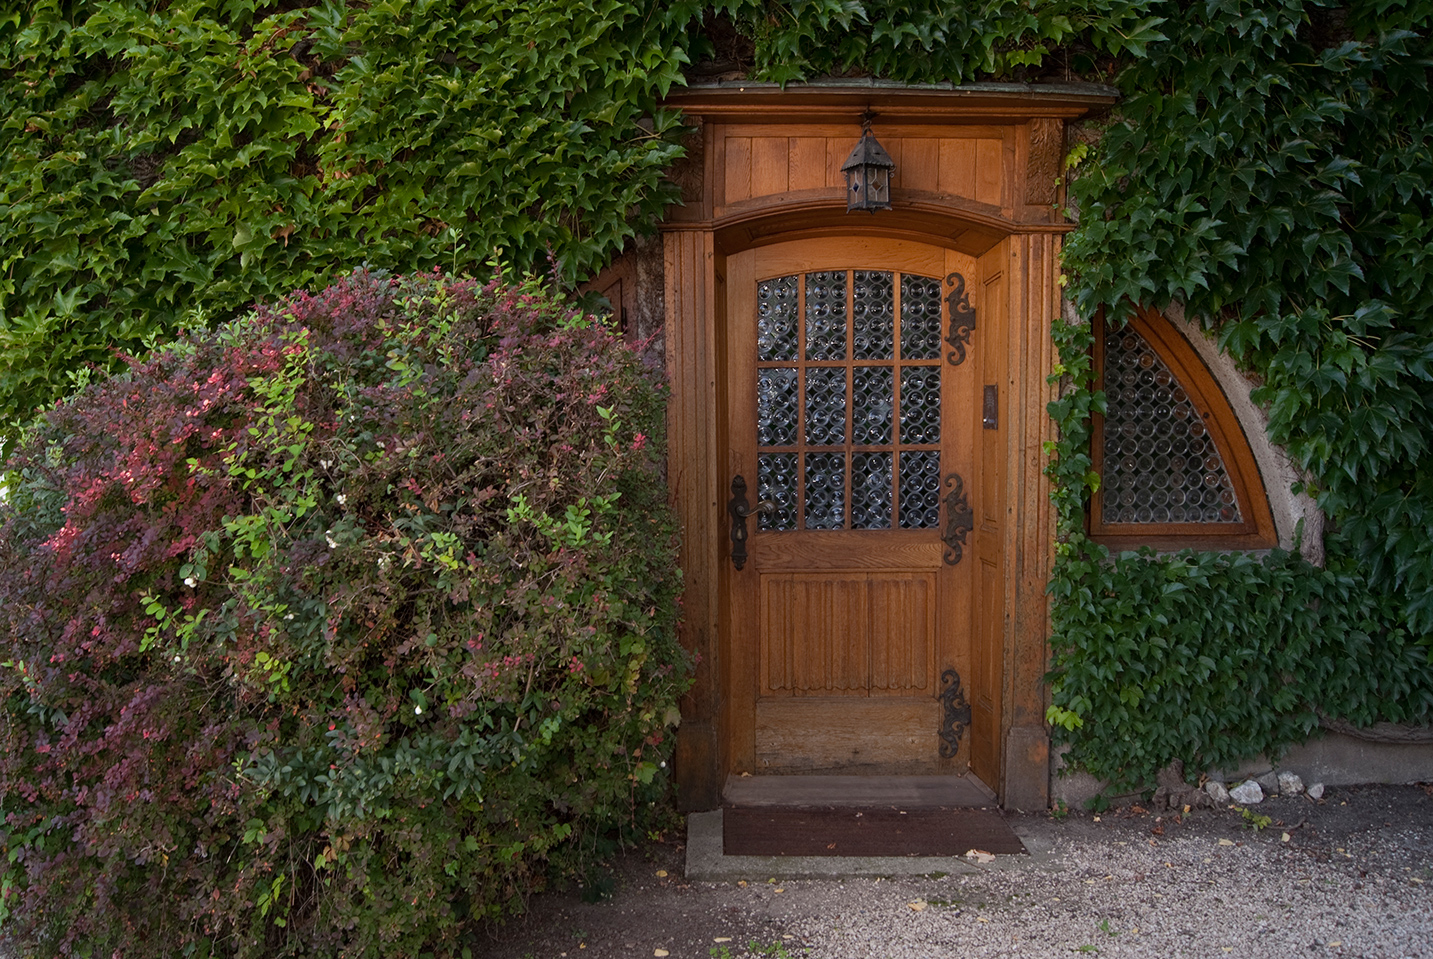 Eingang ins Haus am Mühlbach in Laa an der Thaya.